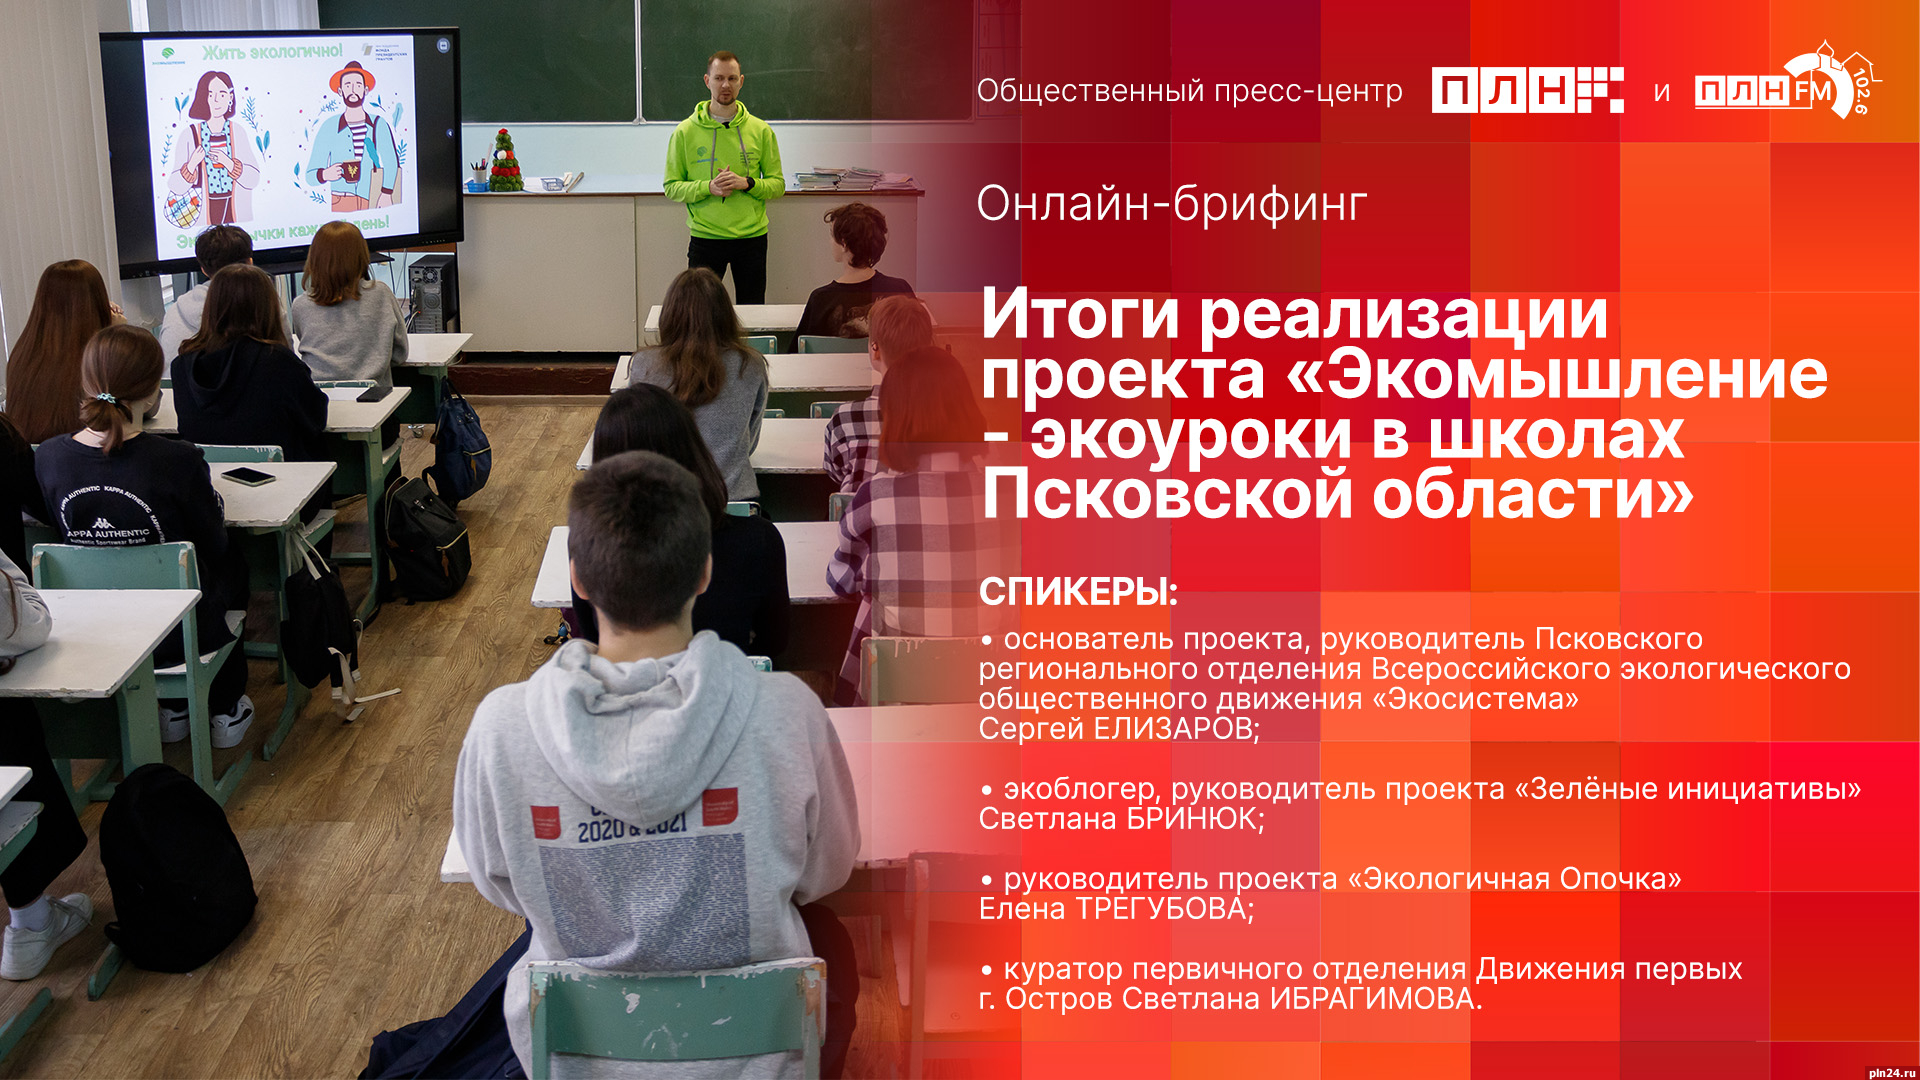 Начинается видеотрансляция онлайн-брифинга об итогах проекта «Экомышление - экоуроки в школах Псковской области»